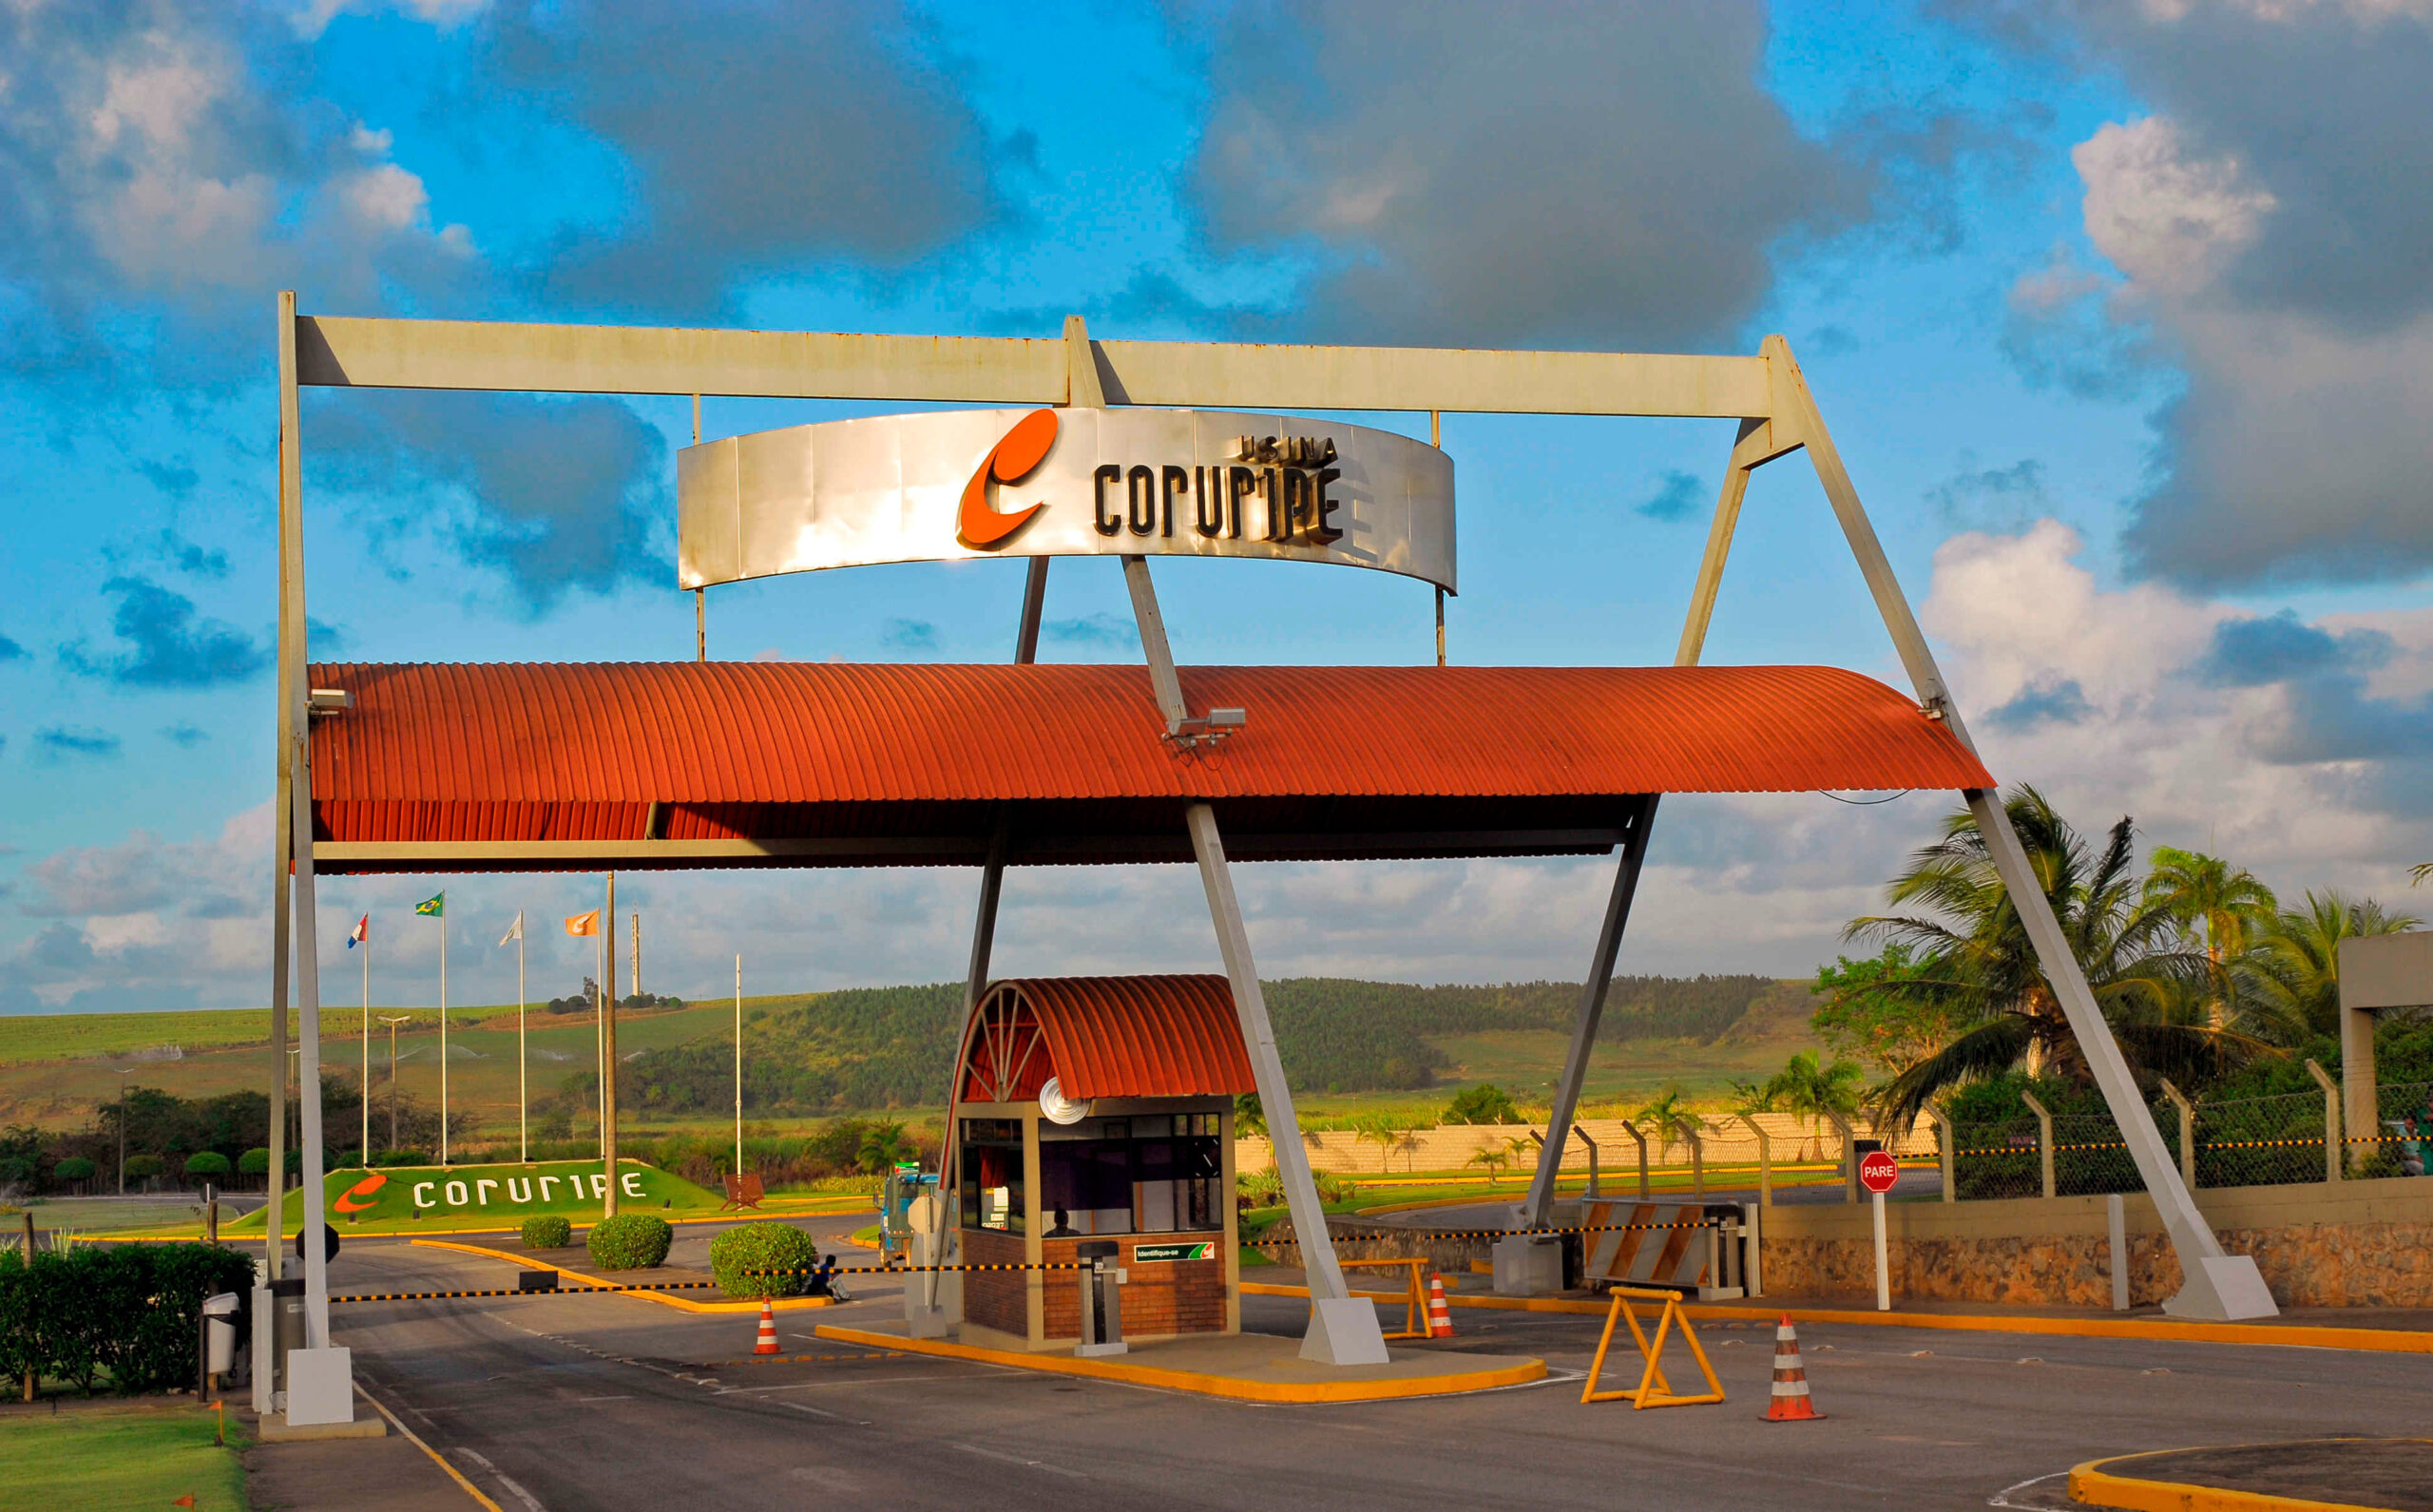 Usina Coruripe registra lucro líquido recorde de R$ 417 milhões na safra 2021/2022